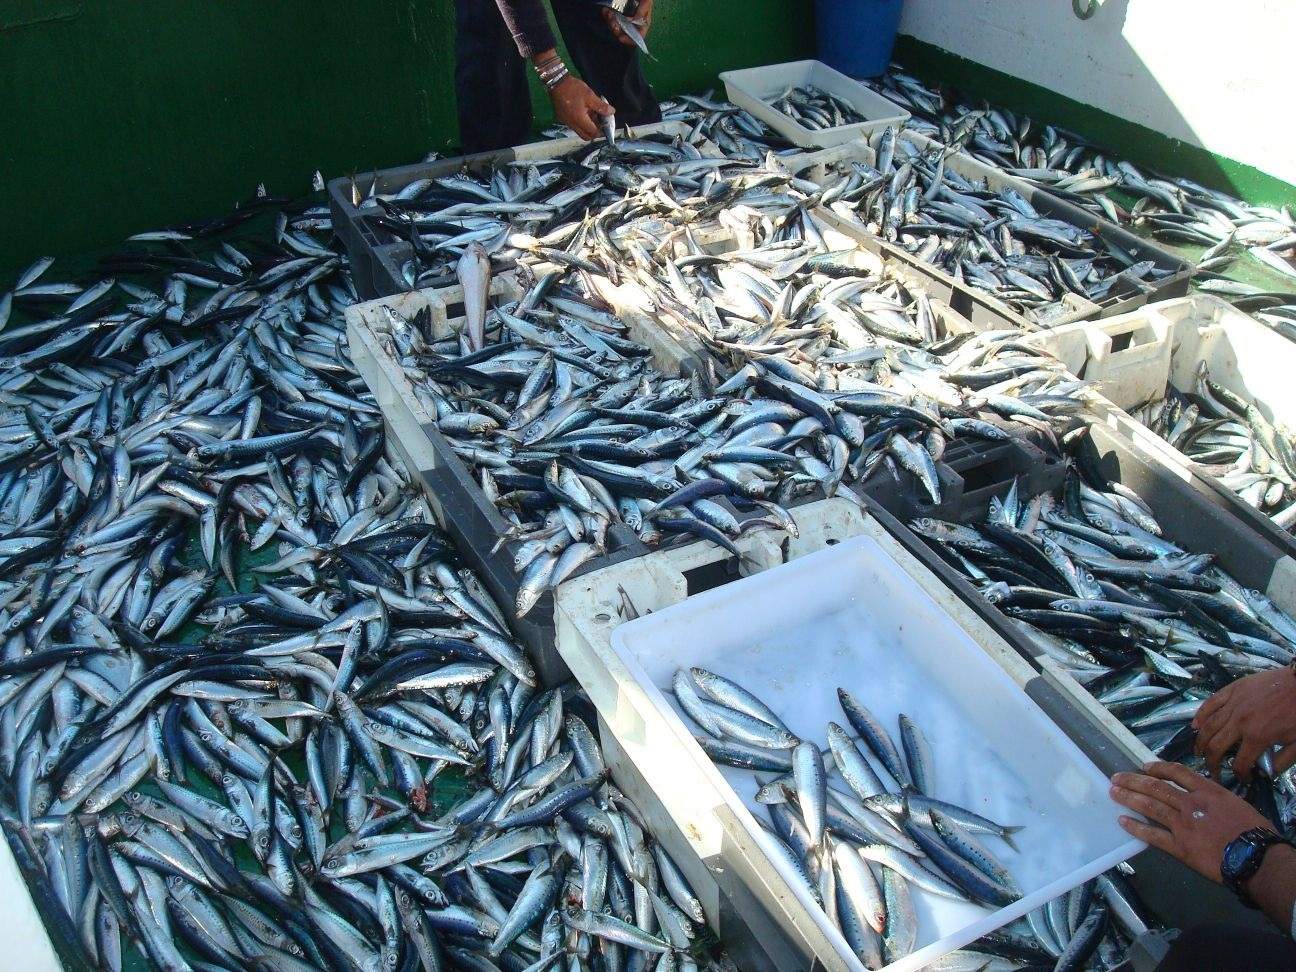 Menjar més sardines i seitons que carn vermella pot evitar fins a 750.000 morts prematures